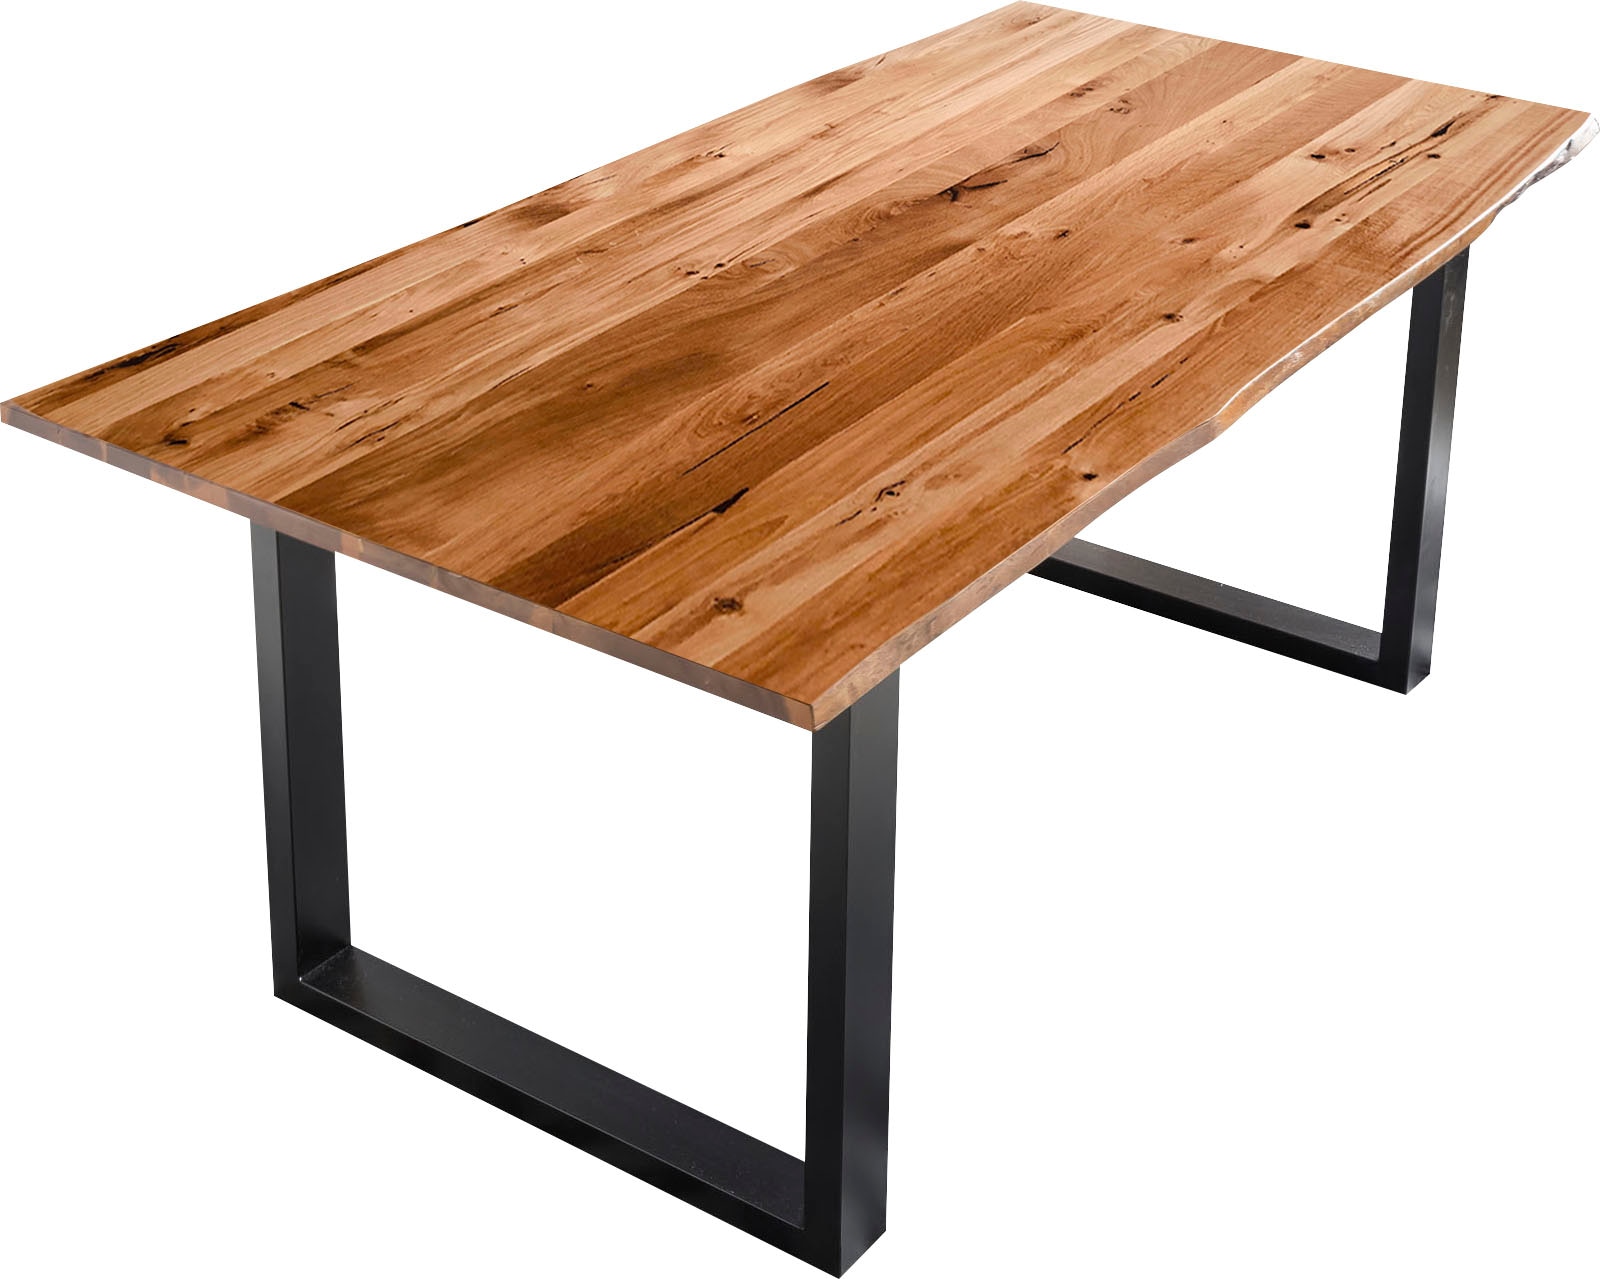 SalesFever Baumkantentisch, Sichtbare Maserung und bestellen aus auf Astlöcher, Massivholz Rechnung Esstisch